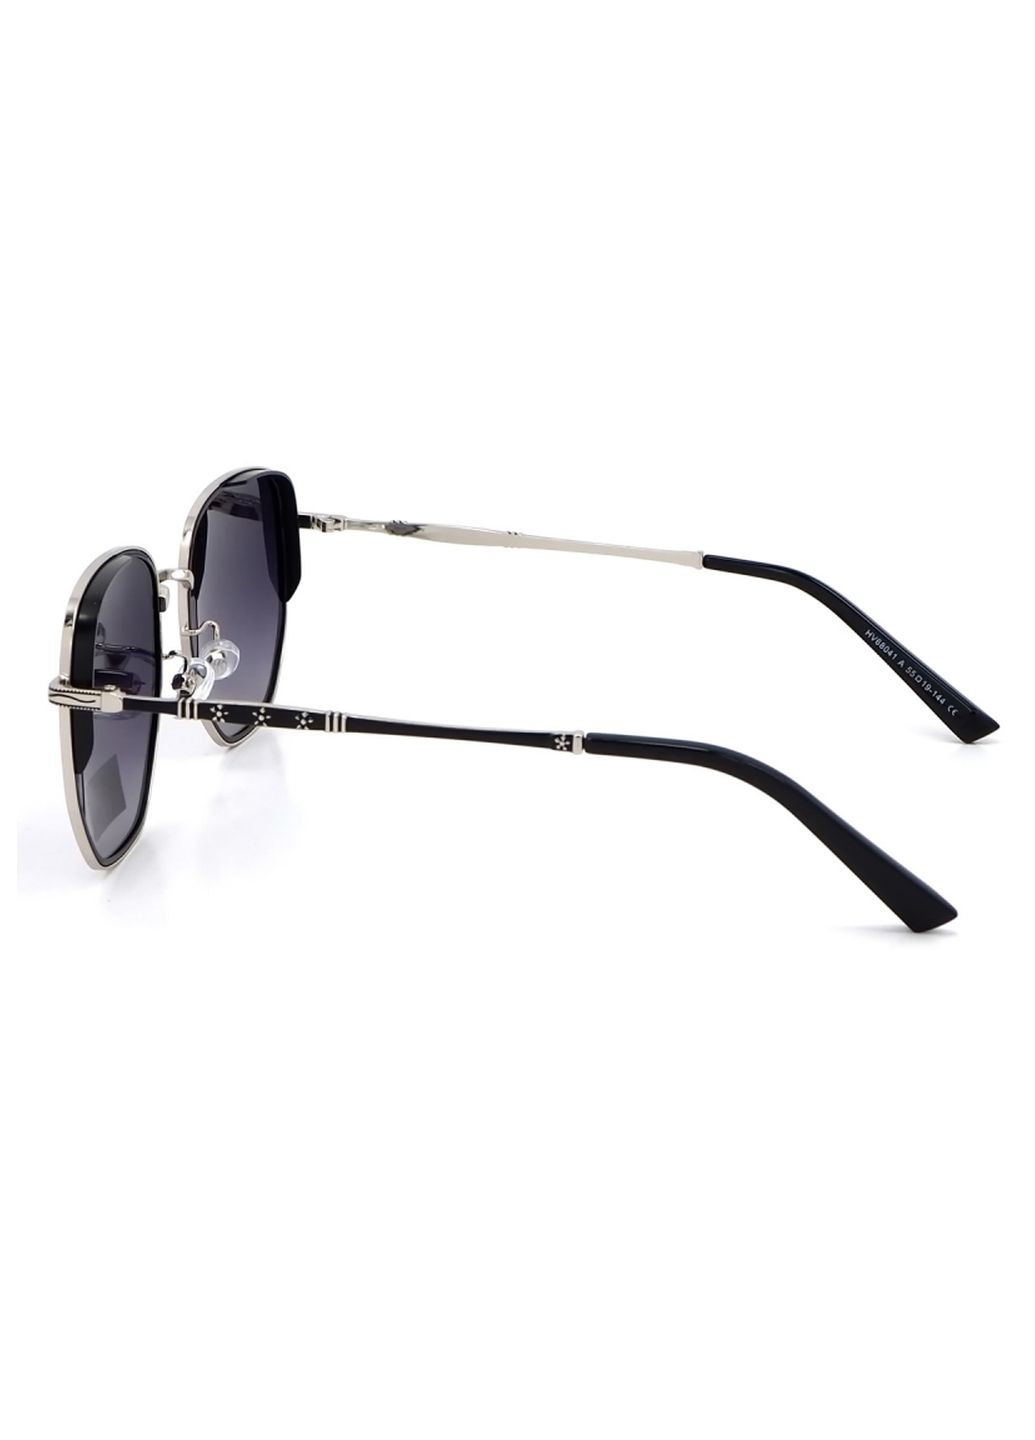 Купить Солнцезащитные очки c поляризацией HAVVS HV68041 170032 - Черный в интернет-магазине